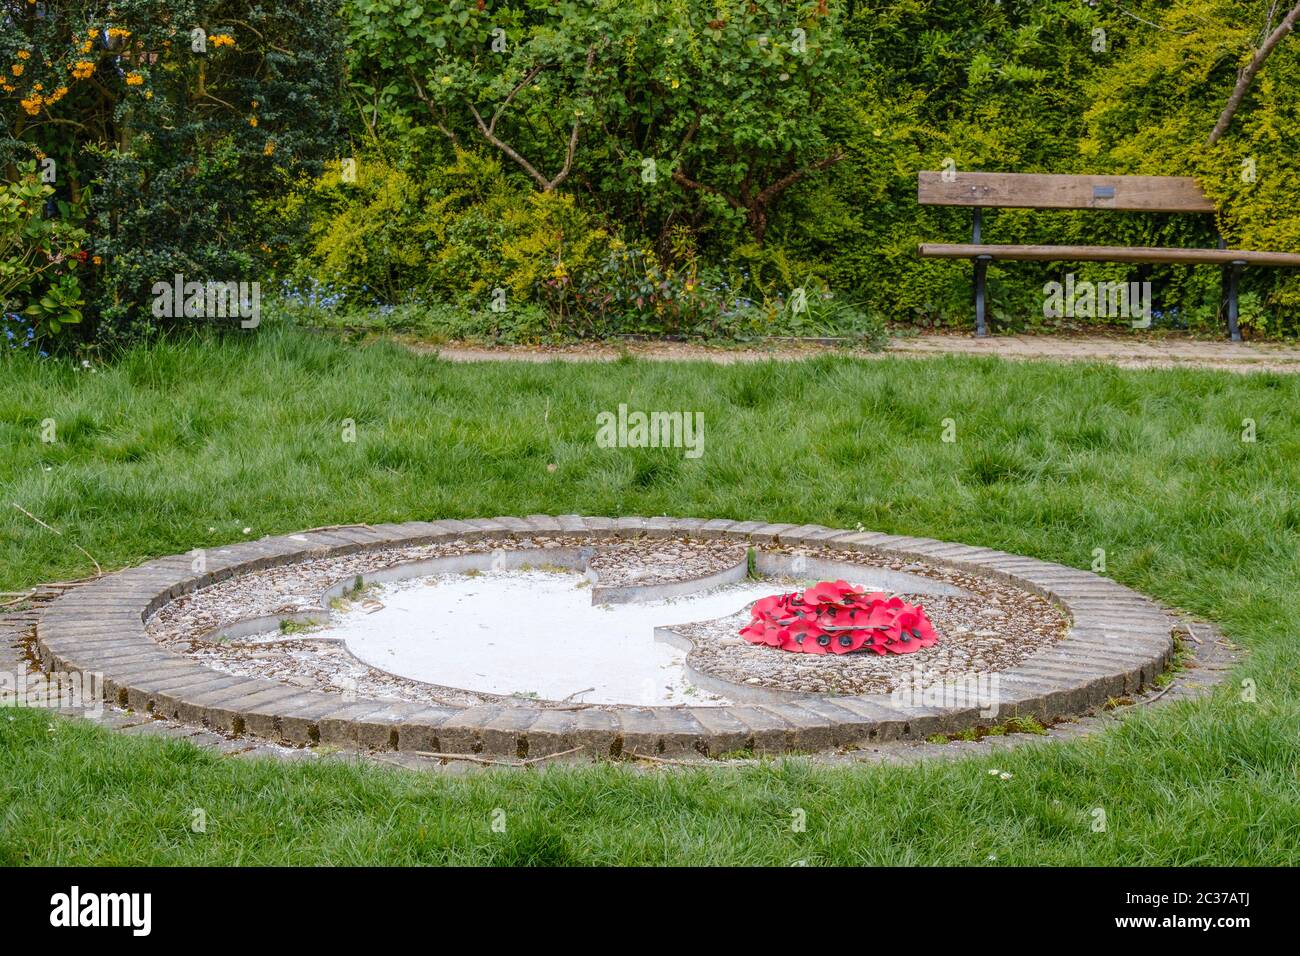 Gros plan de la colombe de la paix sculptée dans le sol avec une couronne du jour du souvenir à côté. Pinner Memorial Park, Pinner, NW London Banque D'Images